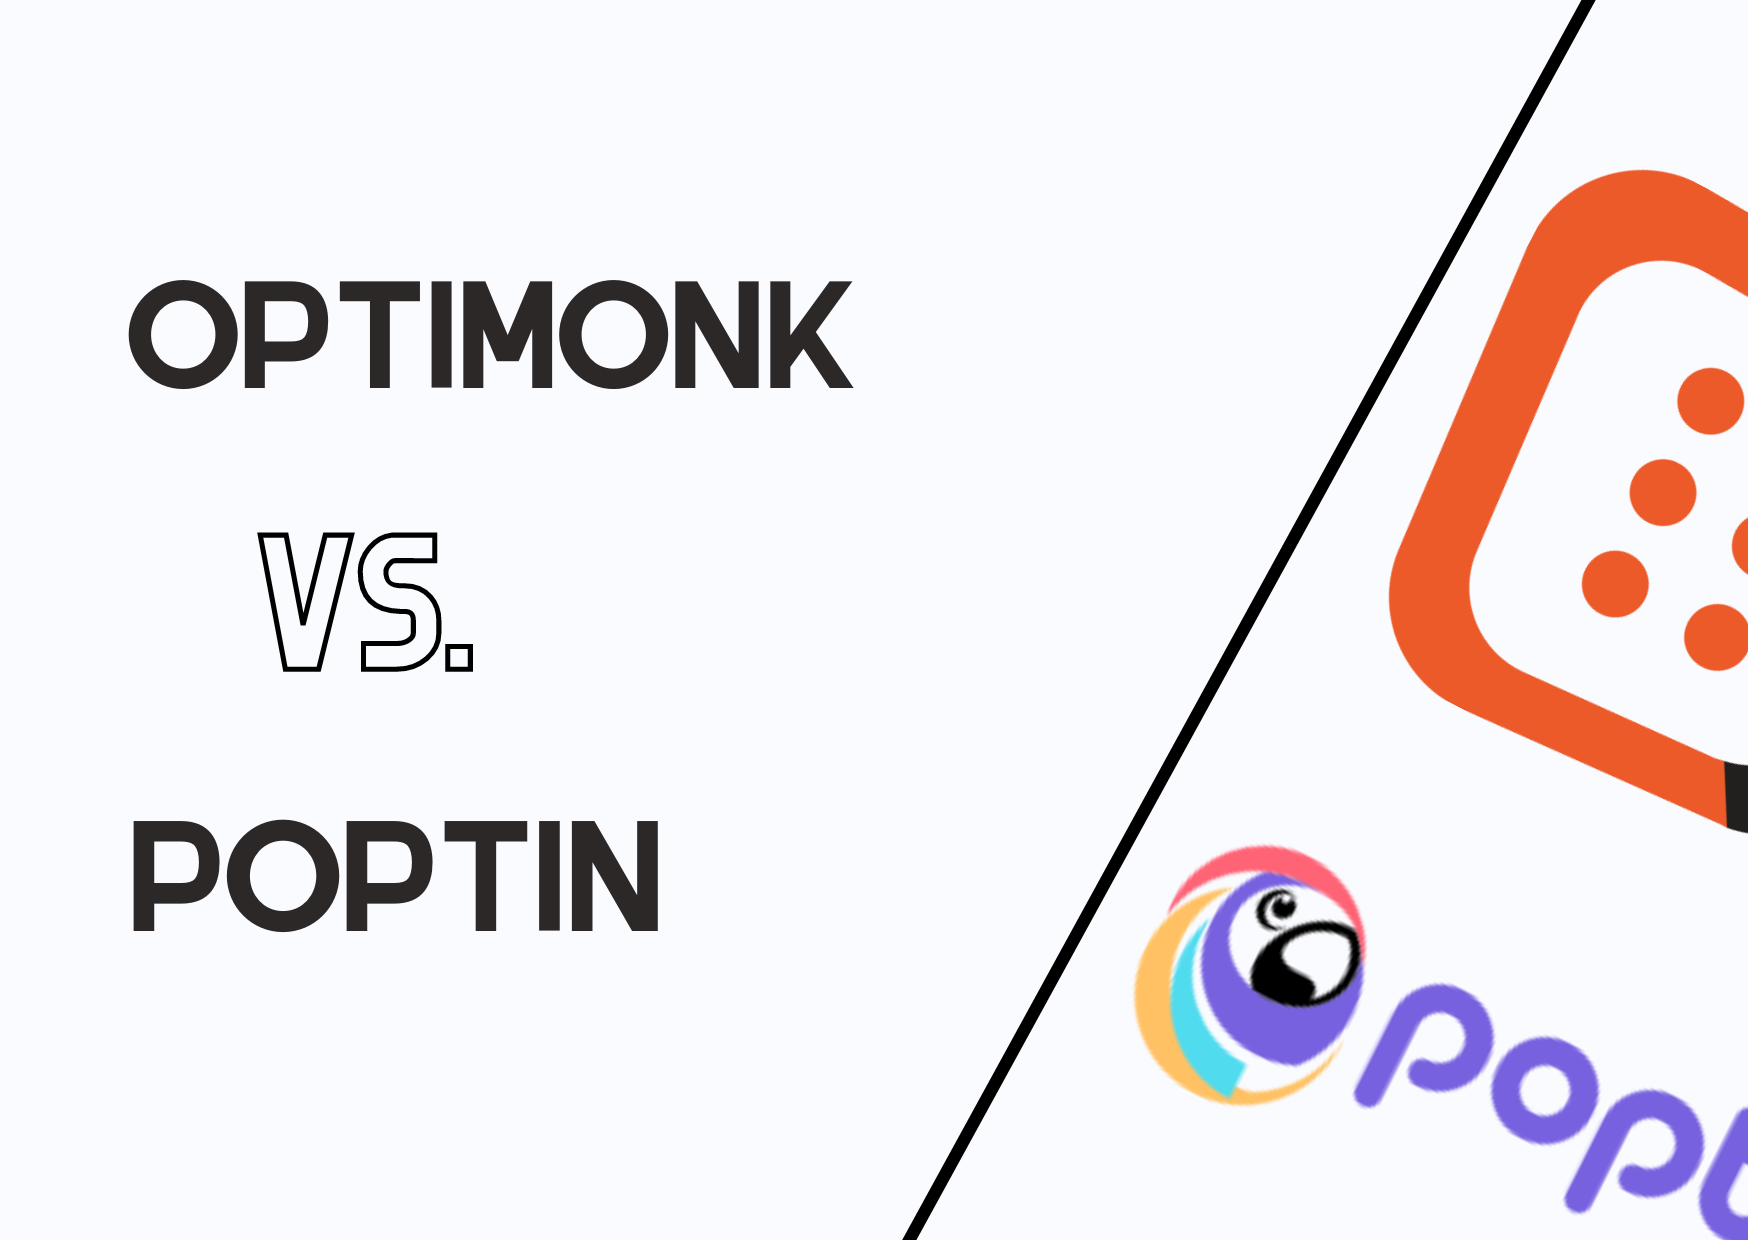 OptiMonk vs Poptin banner with their logos